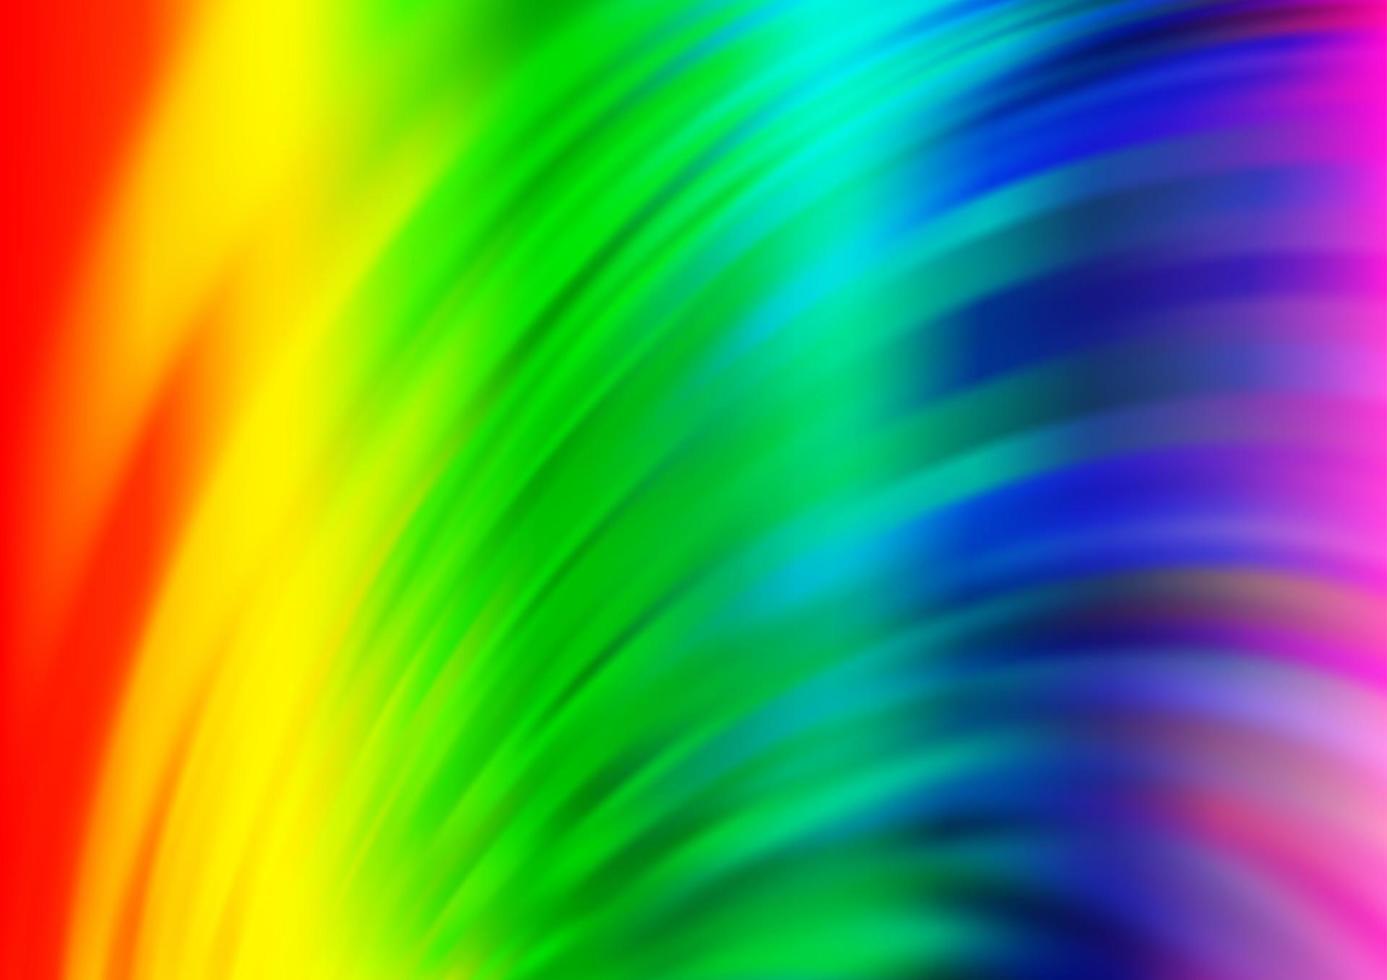 luz multicolorida, modelo de vetor de arco-íris com linhas dobradas.